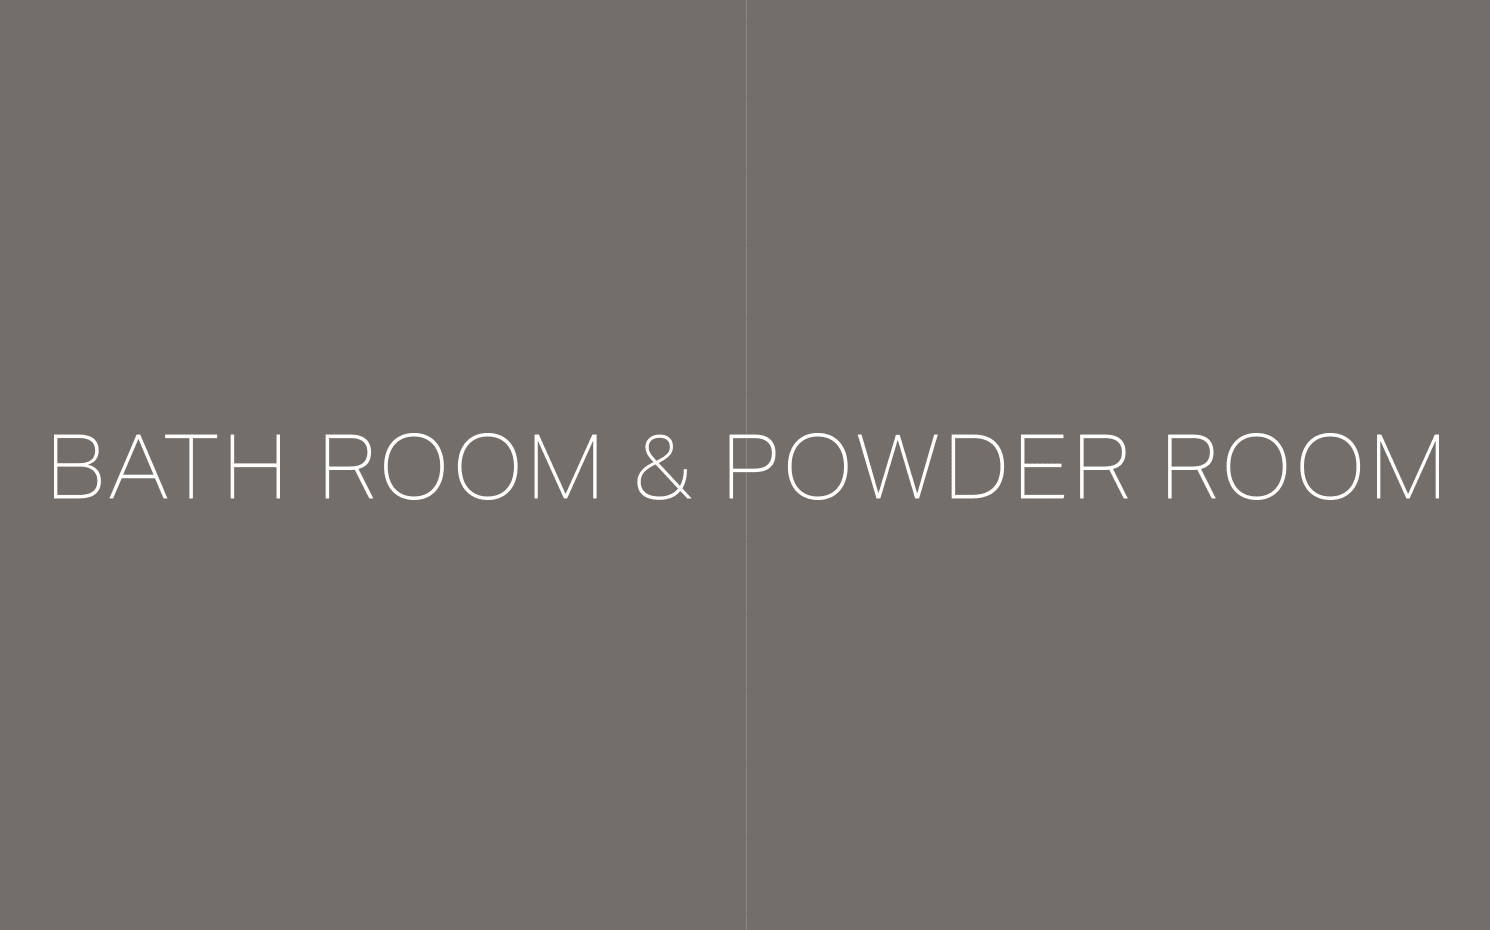 BATH ROOM & POWDER ROOM